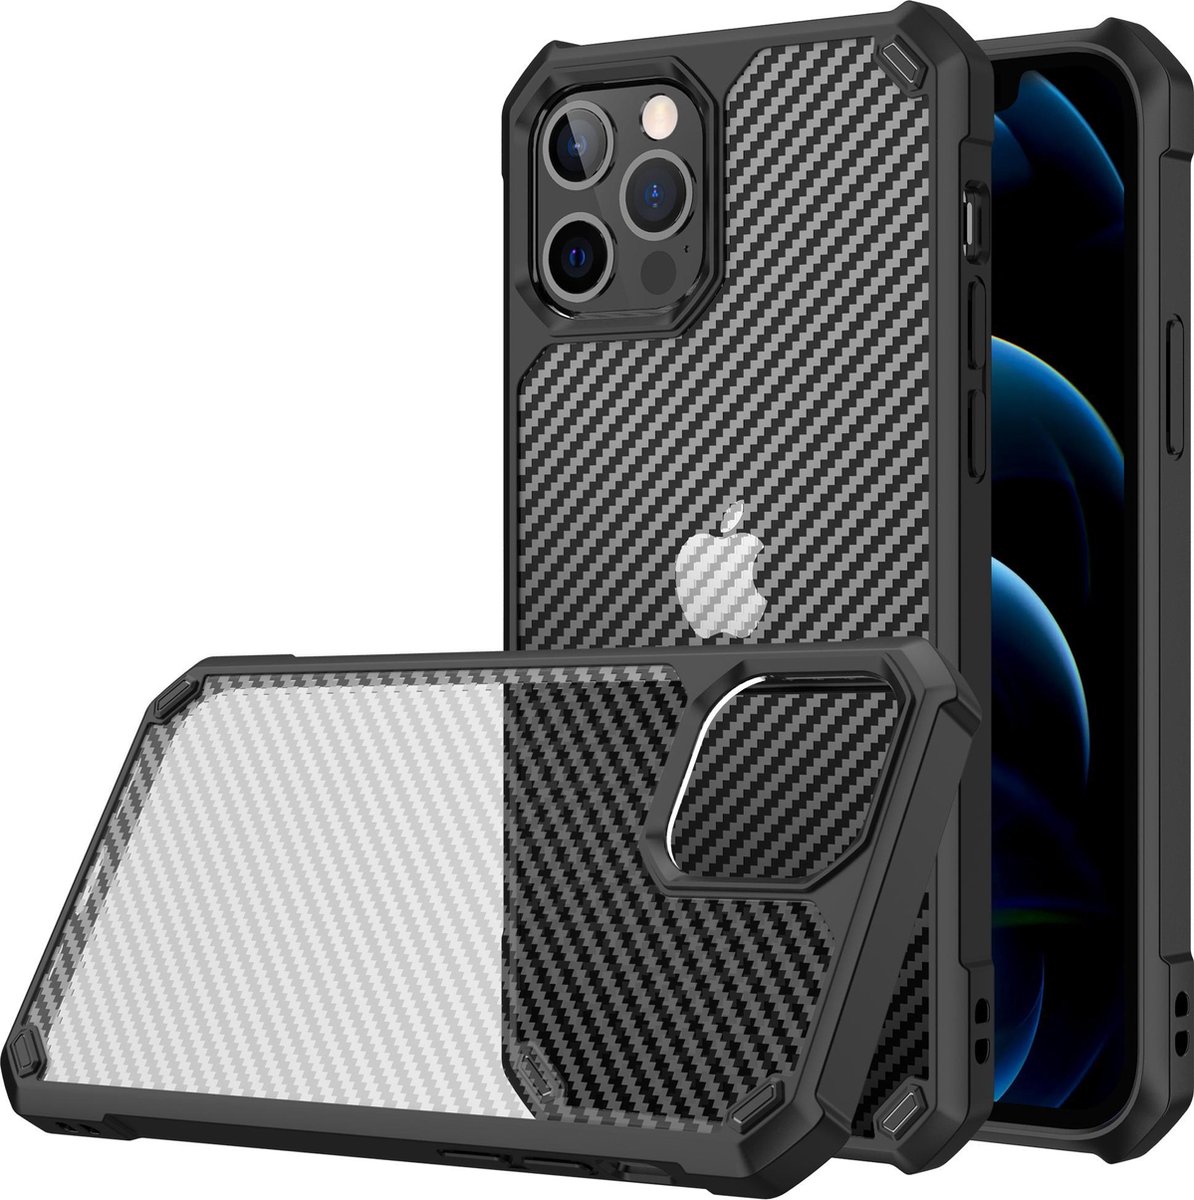 iPhone 12 hoesje met screenprotector - Zwart - Transparant - Extra beschermend